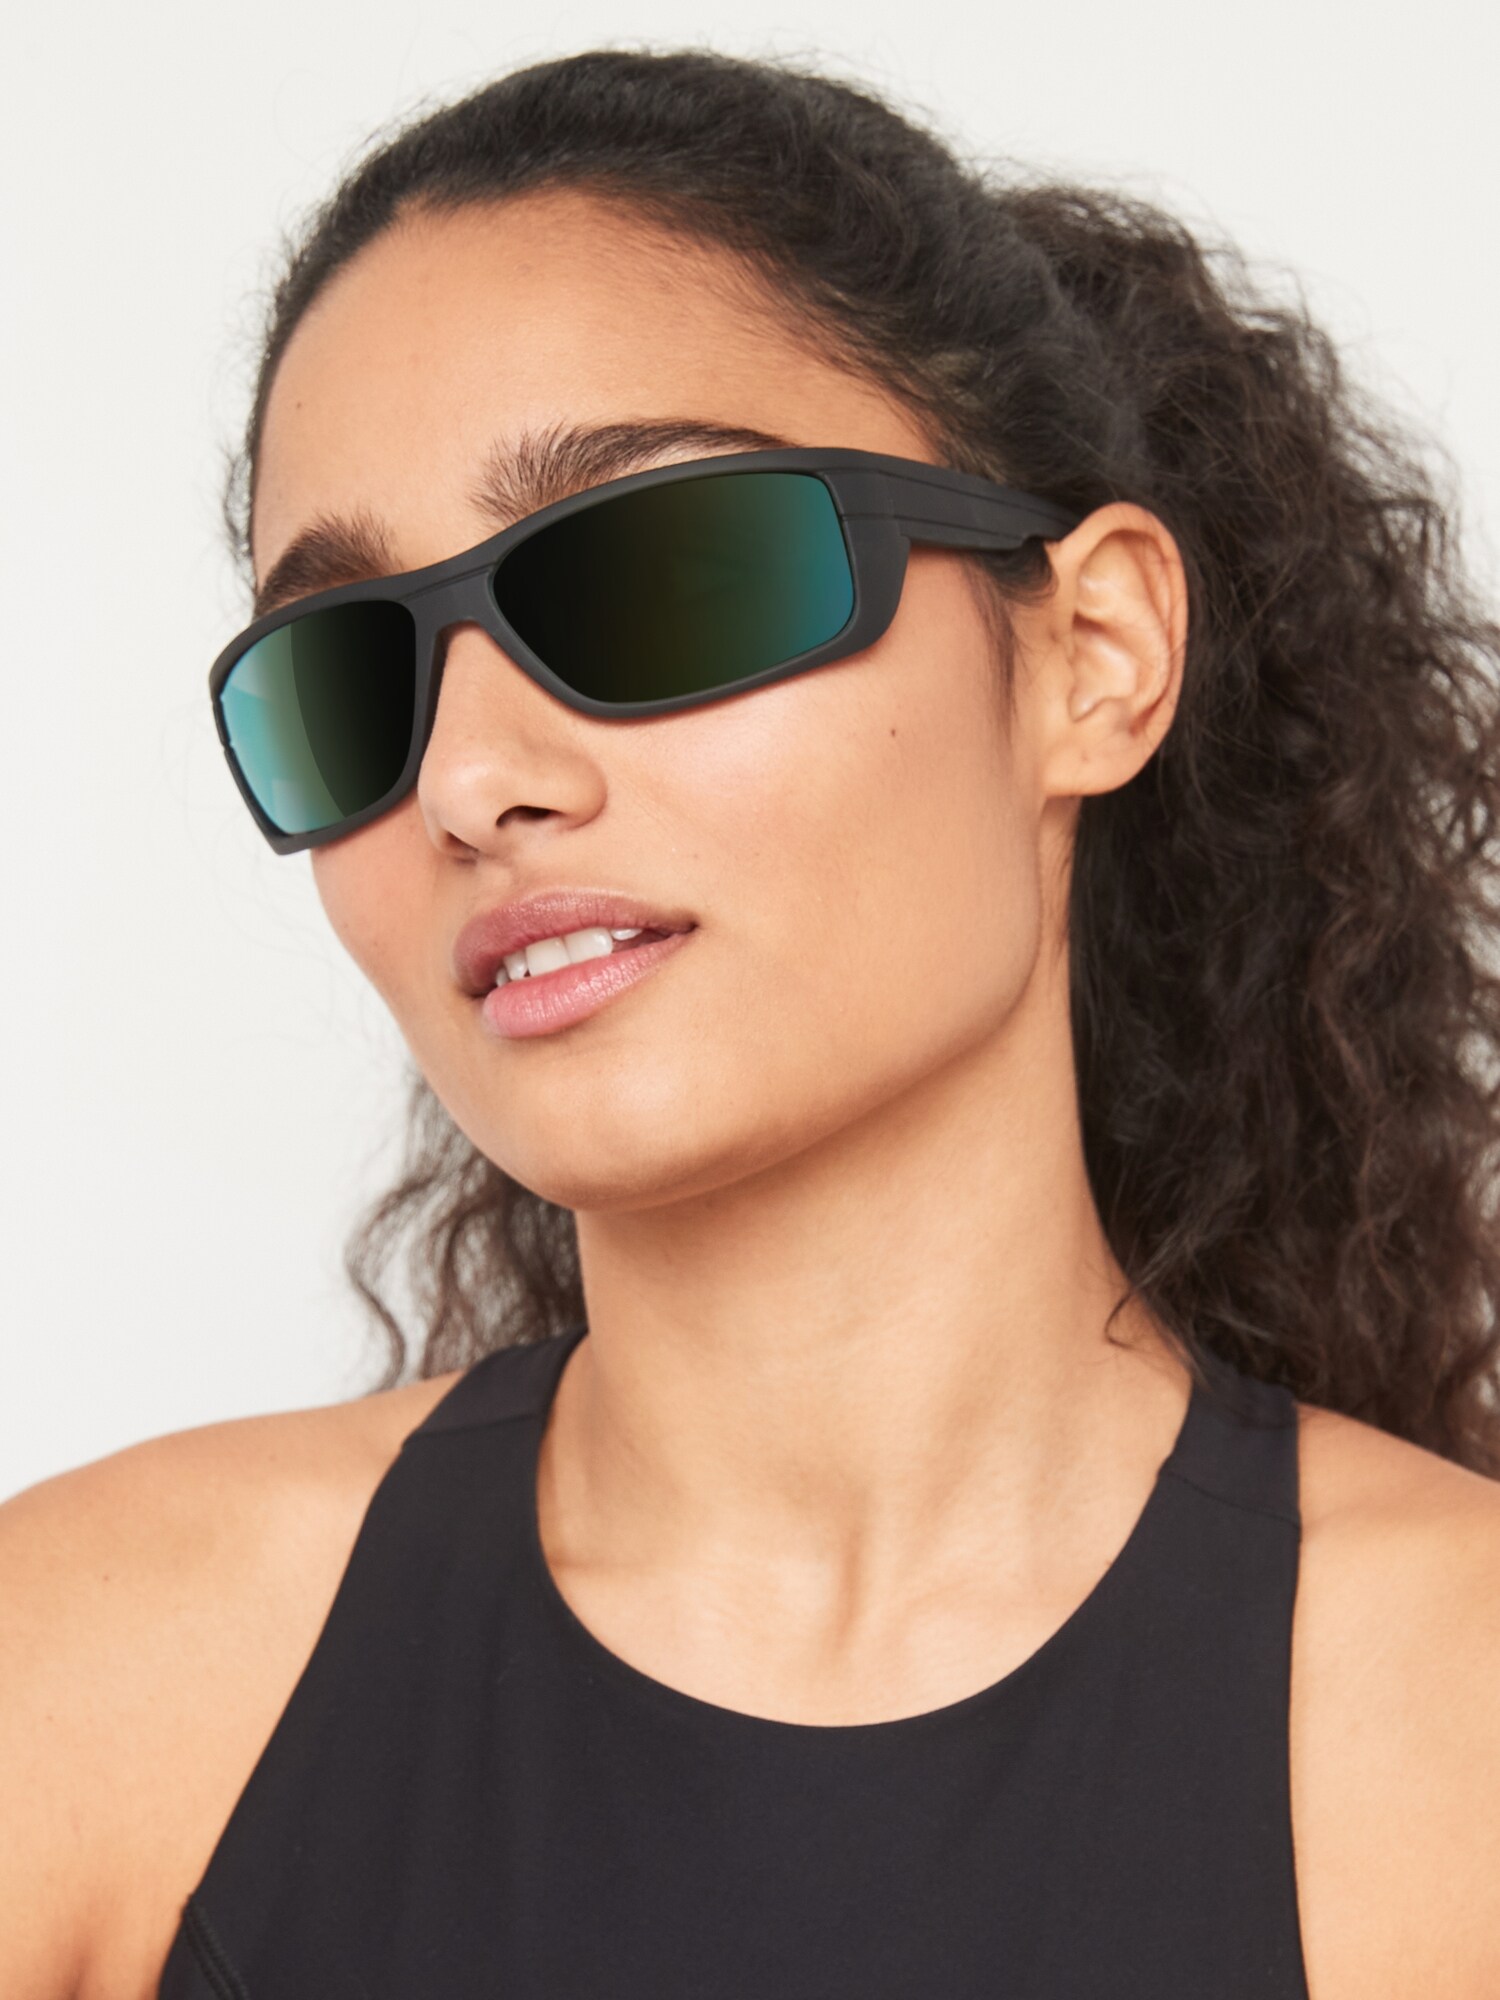 Mirror-Lens Sports Sunglasses for Men